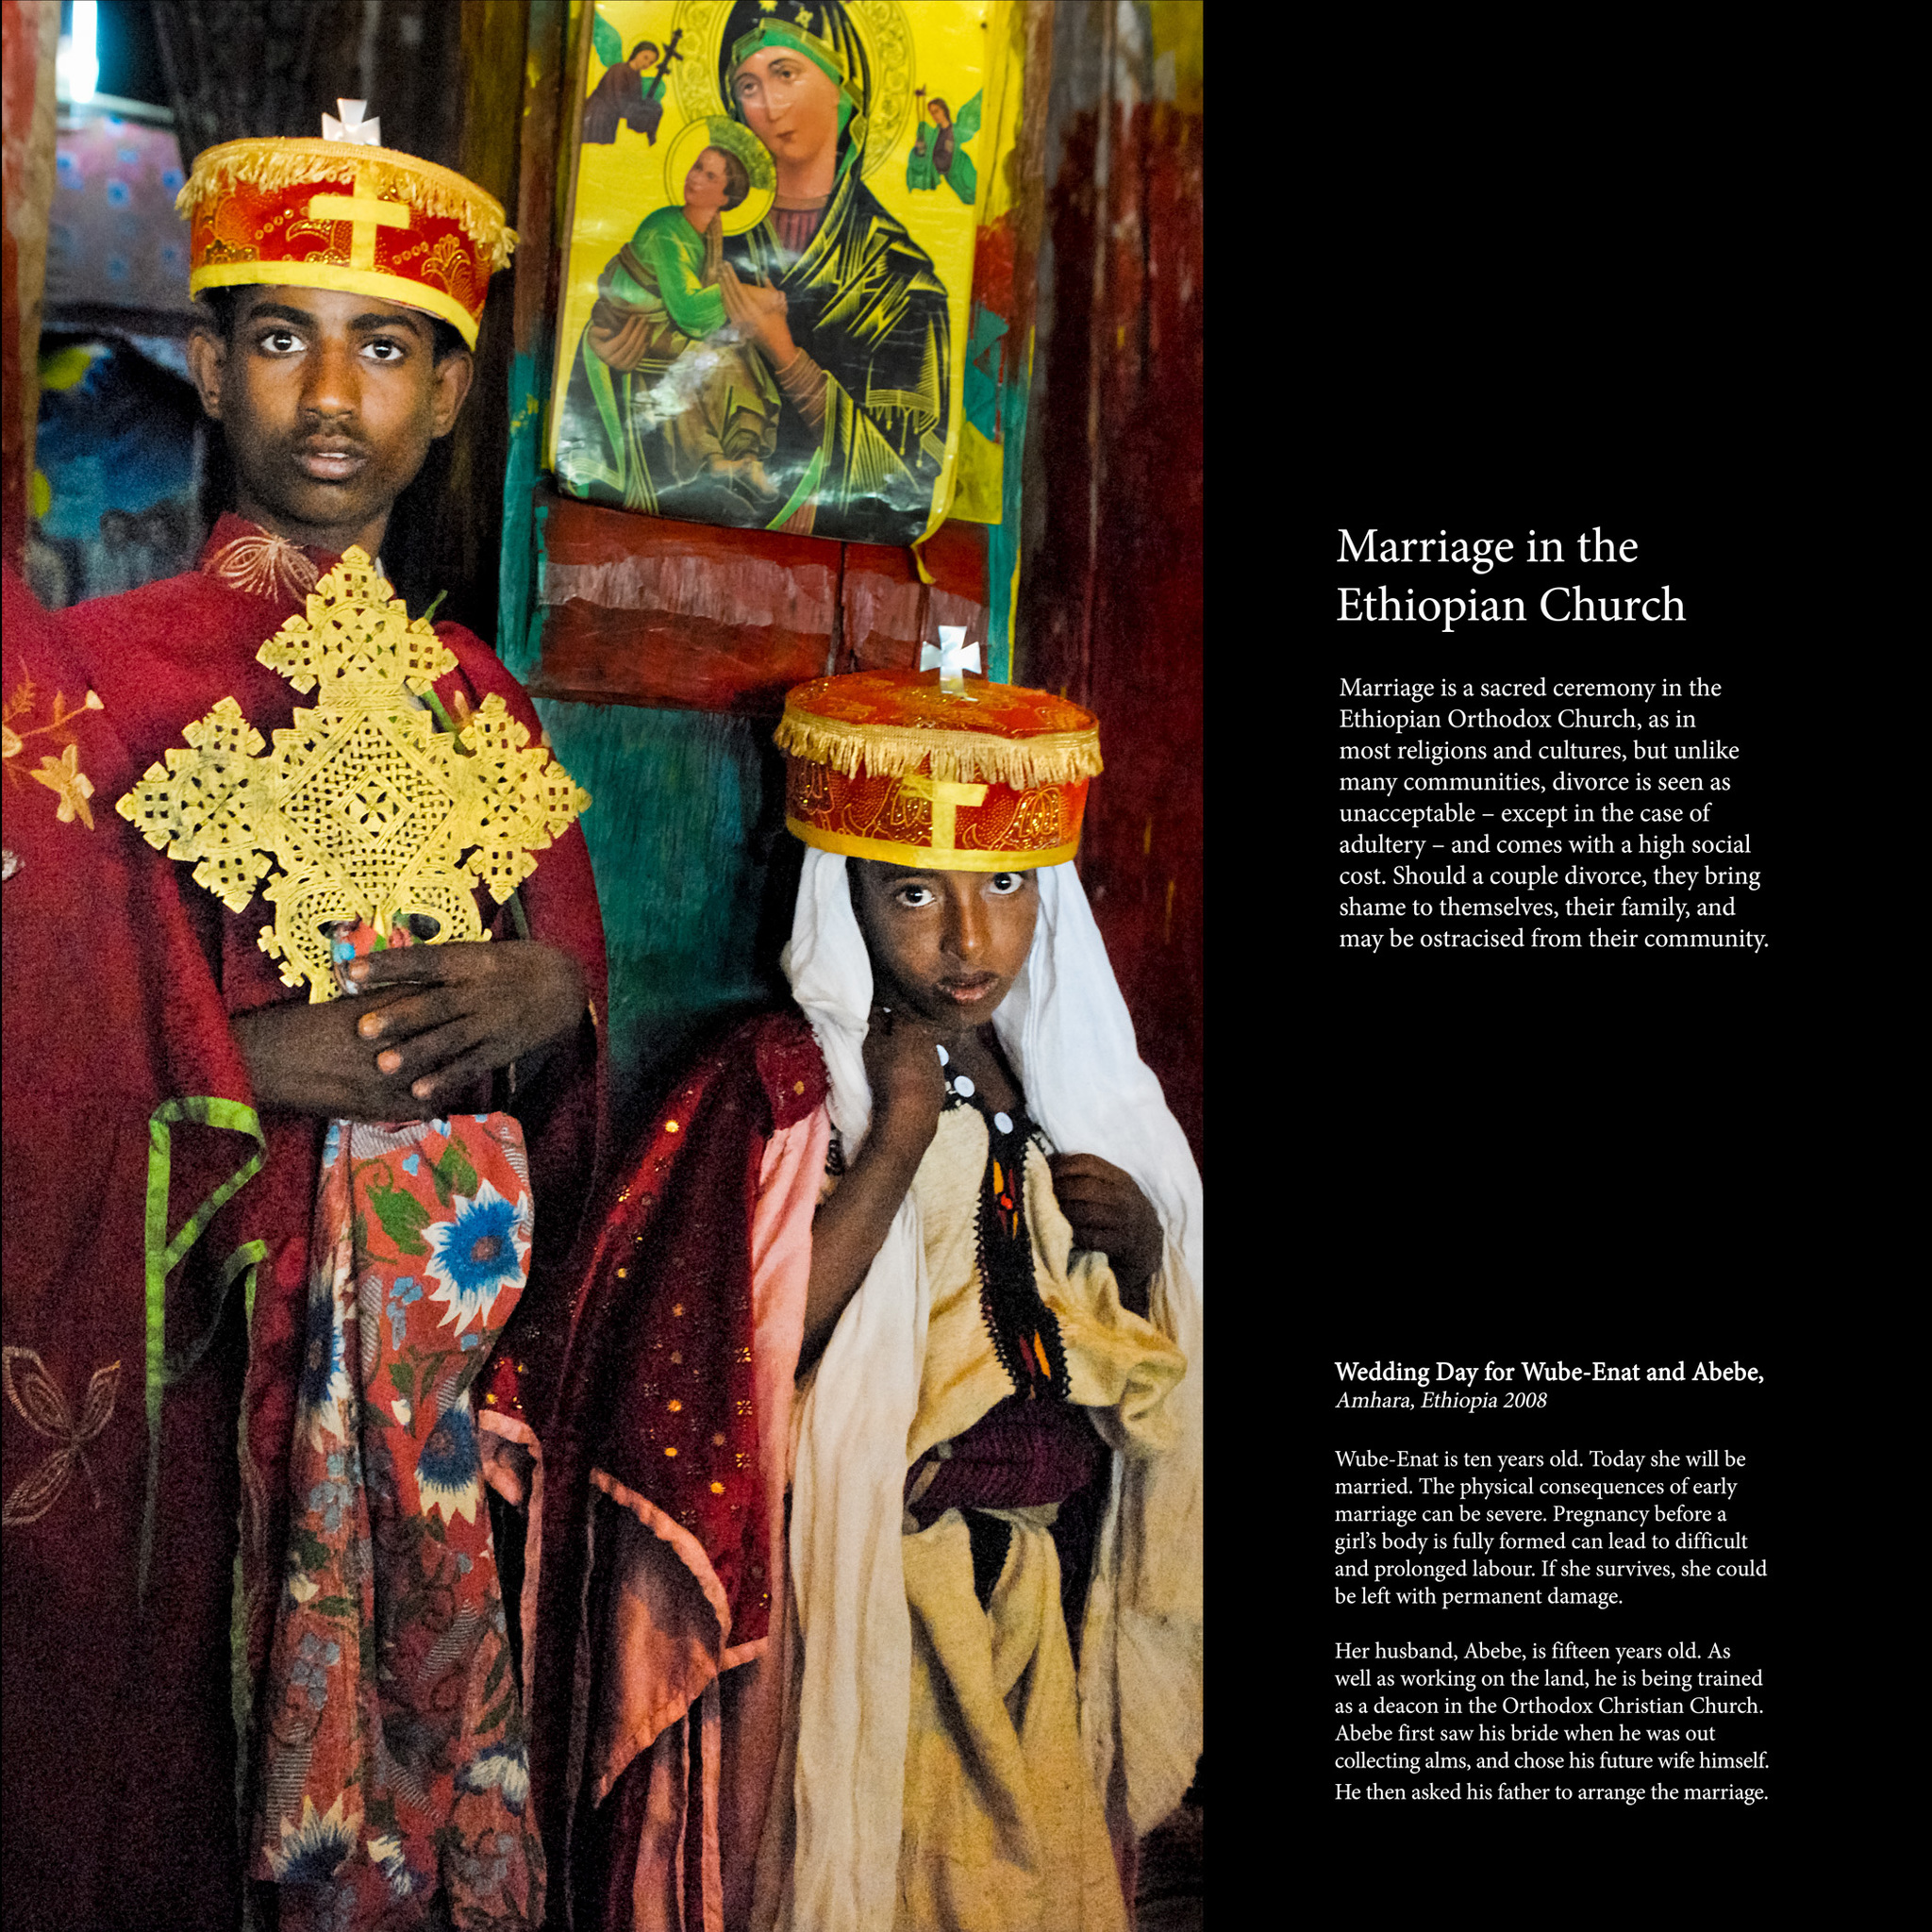 Matrimonio por la iglesia etíope. La boda de Wube-Enat y Abebe, de 10 y 15 años. Amhara, Etiopía, 2008.